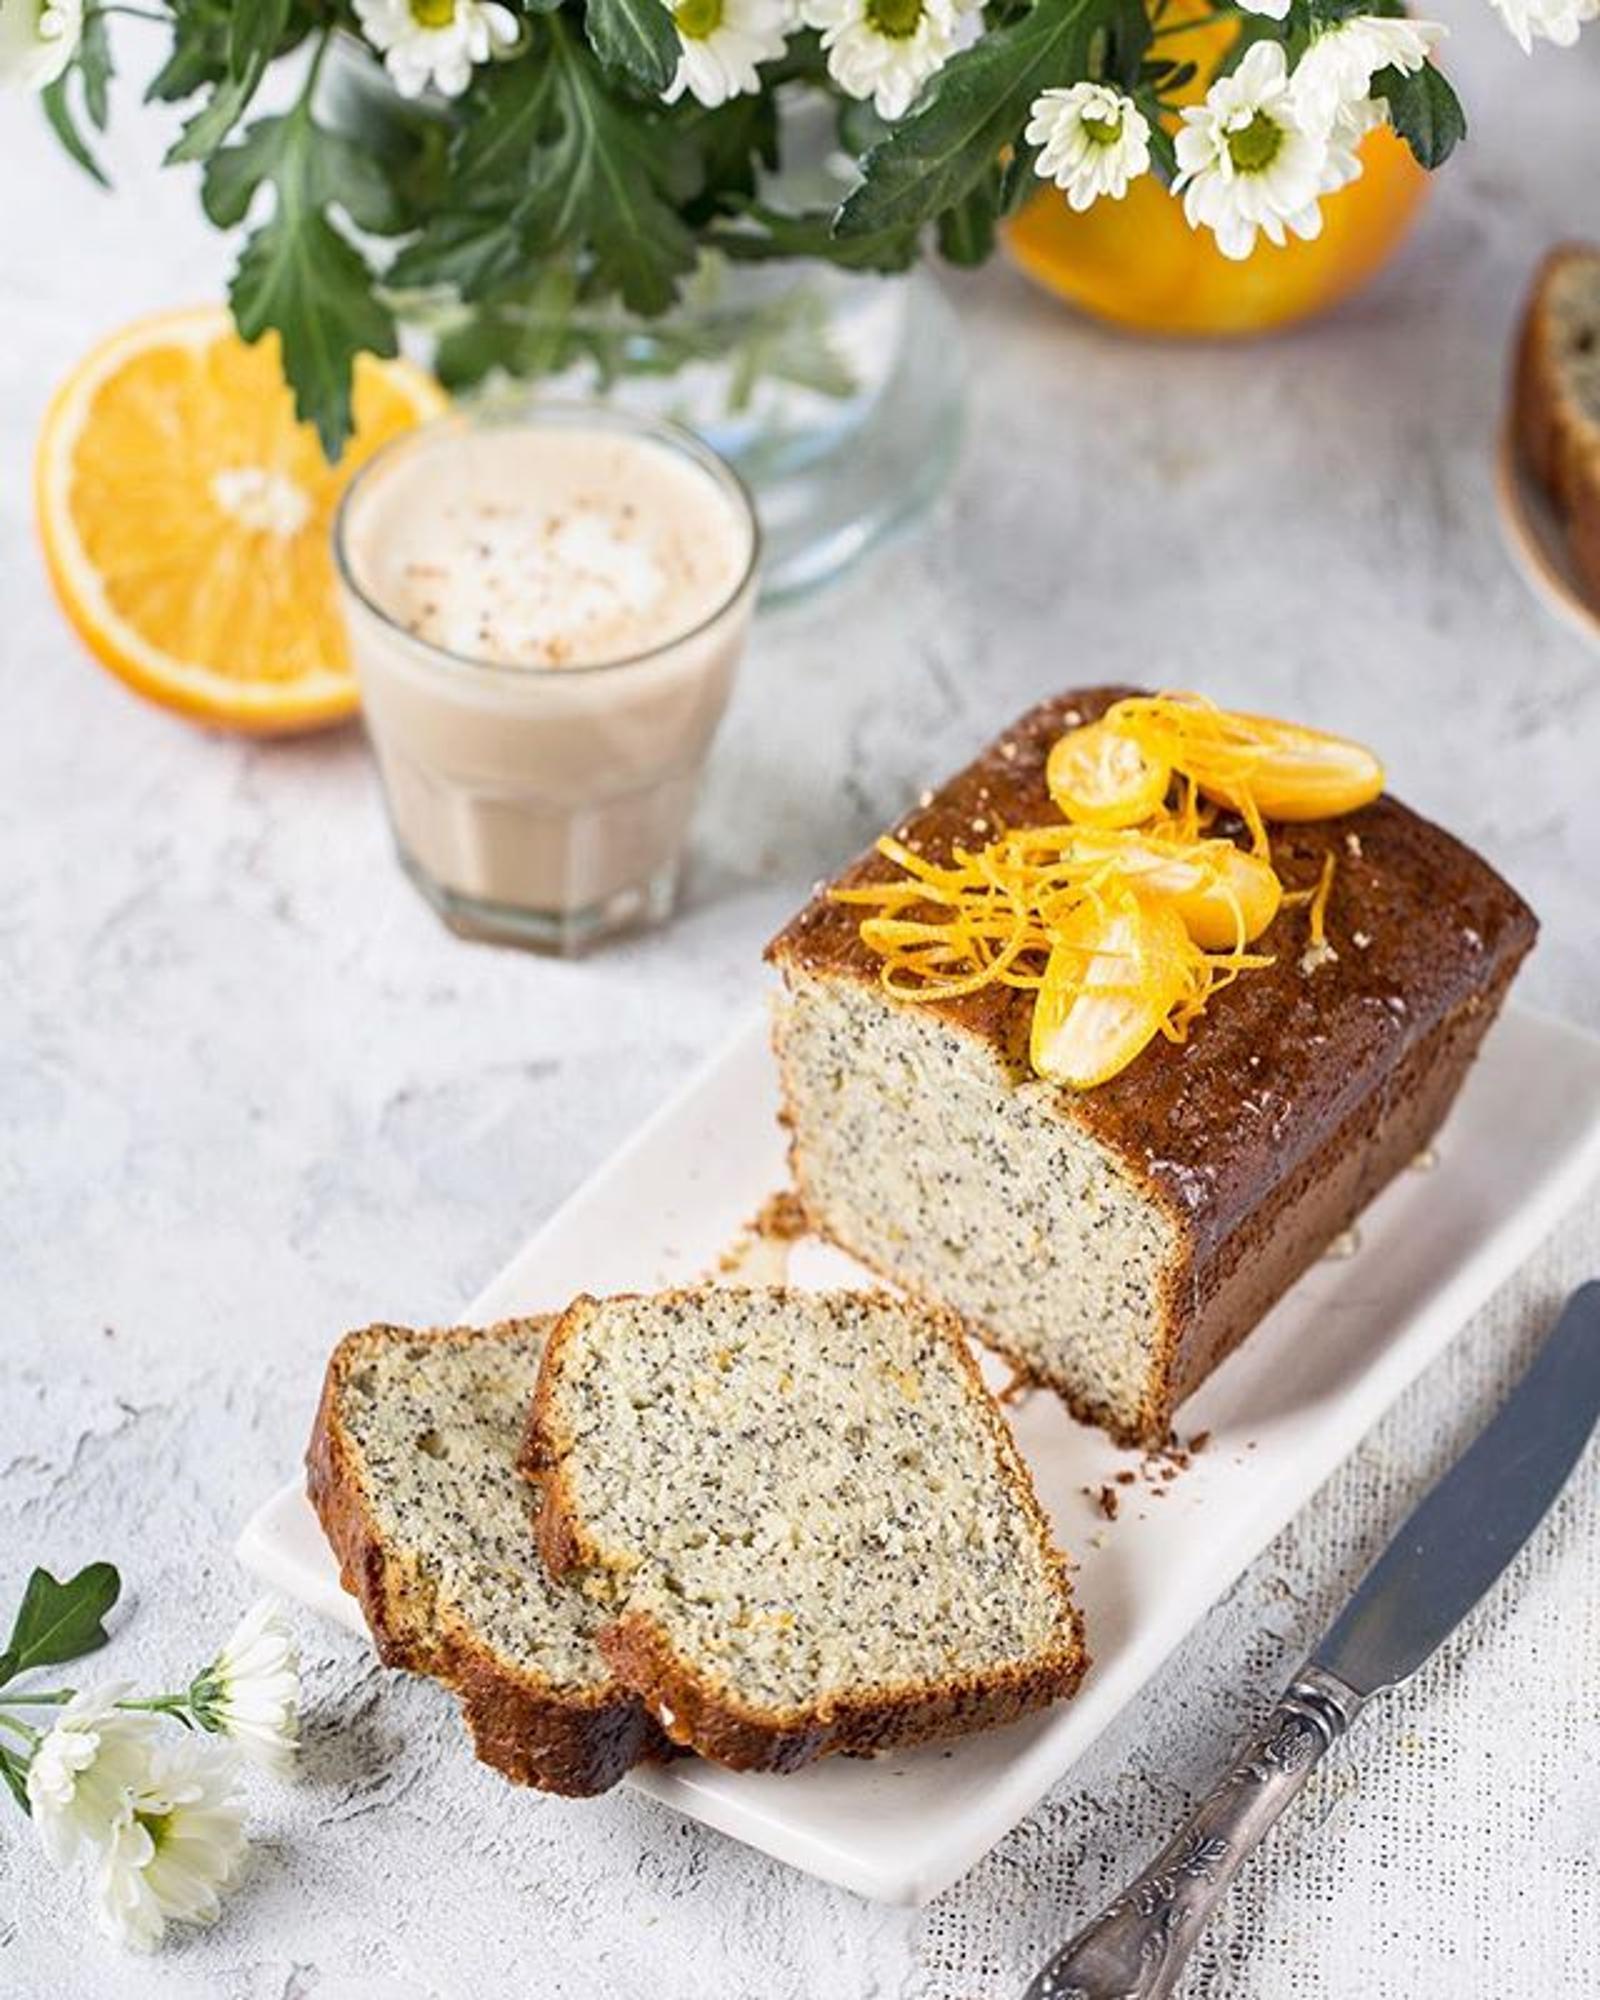 Апельсиново-маковый кекс, автор фото и рецепта Дарья Близнюк: https://www.instagram.com/zhabcka/